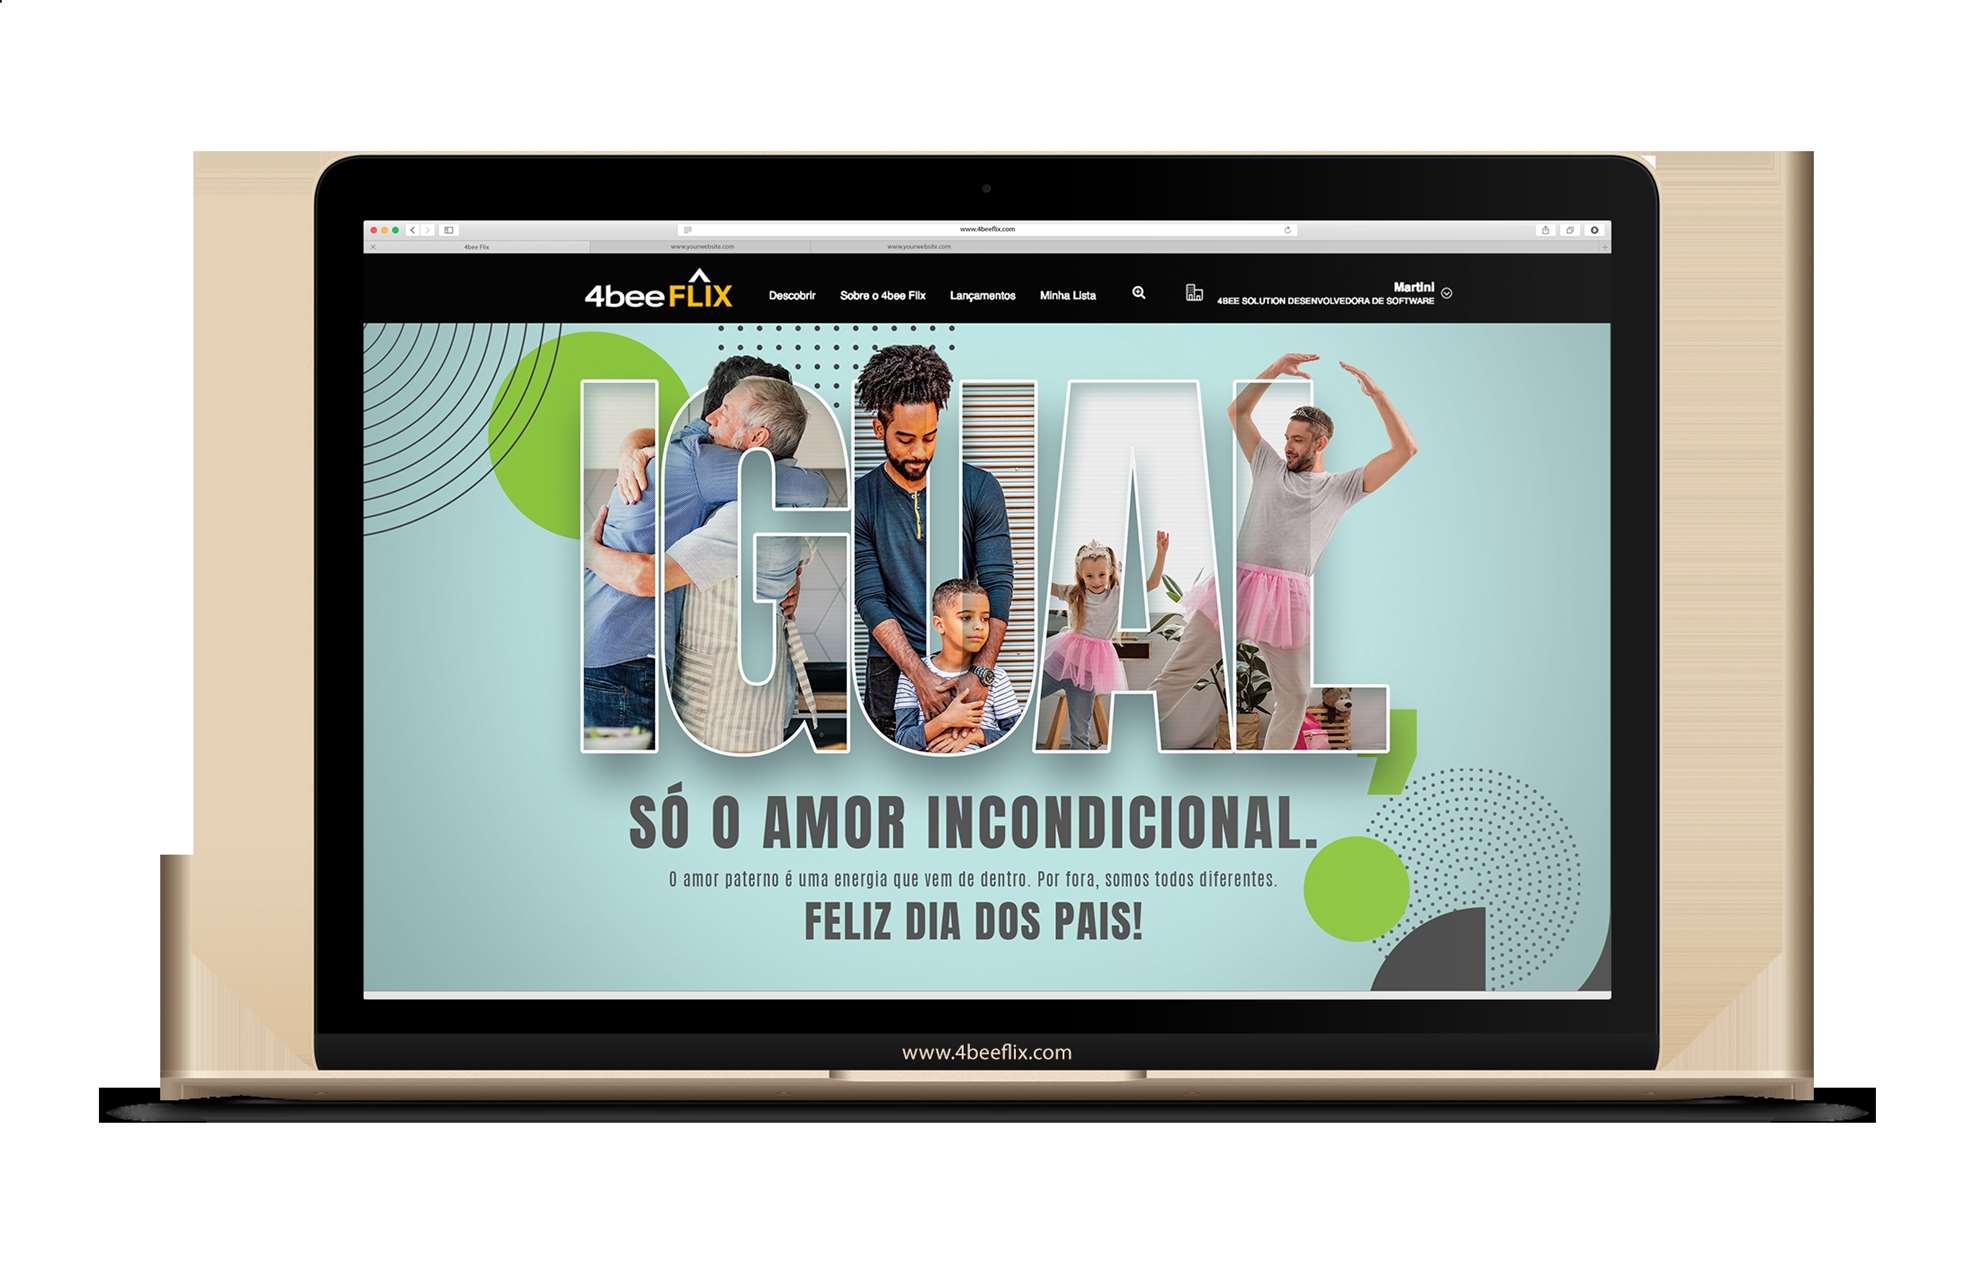 4bee Flix lança campanha “Só o amor incondicional”